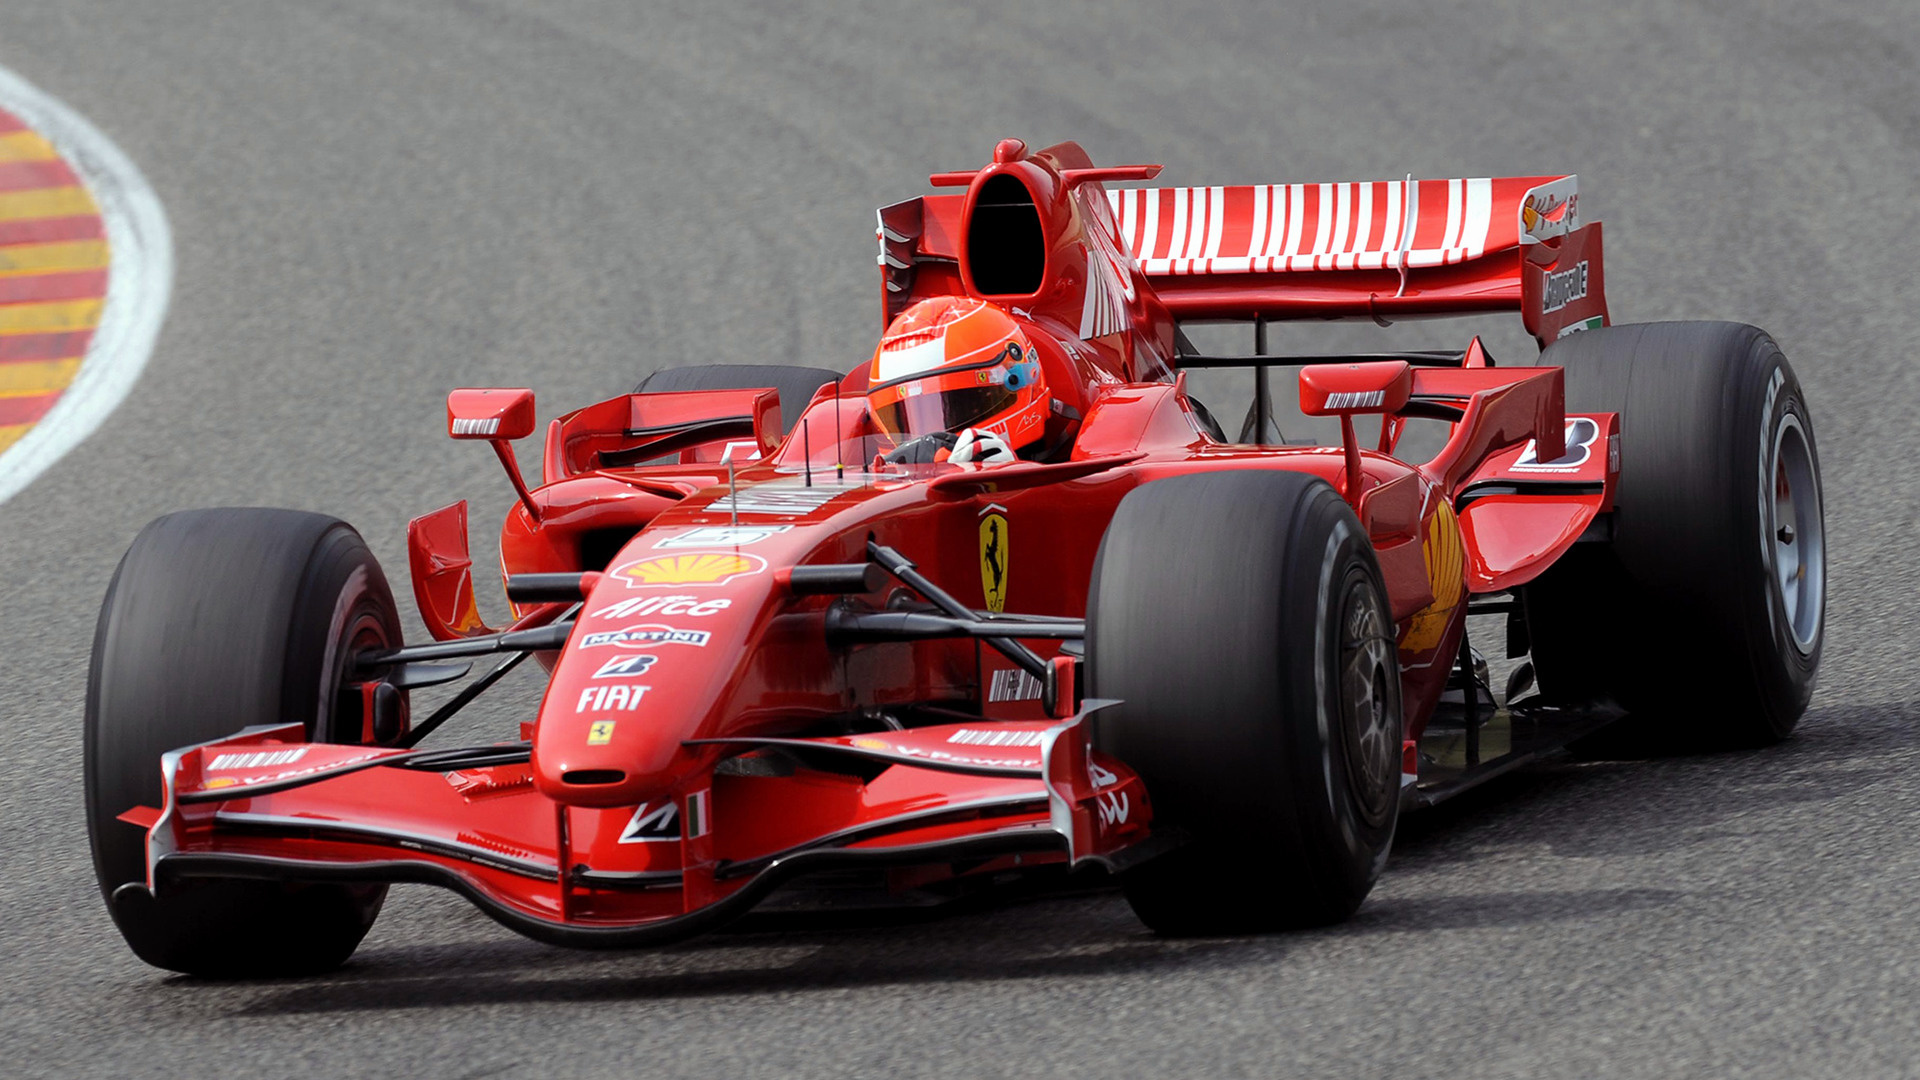 Descargar fondos de escritorio de Ferrari F2007 HD